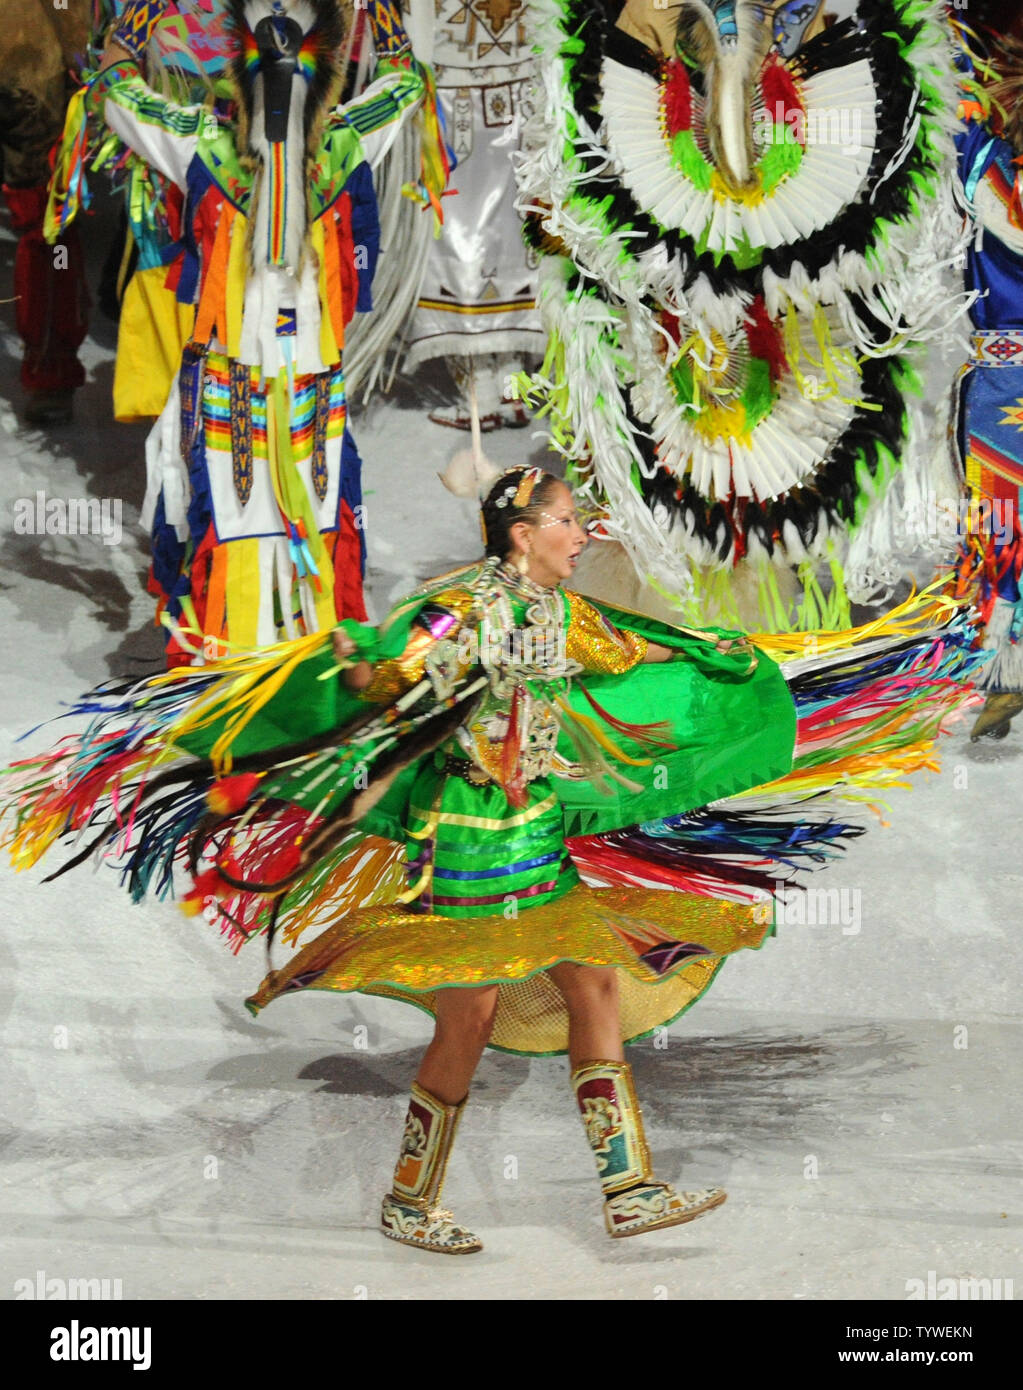 Gebürtiger Kanadier in native Kostüme Tanz während der Eröffnungszeremonie für die Olympischen Winterspiele 2010 Vergangenheit Native Canadiana an BC Place in Vancouver, Kanada, am 12. Februar 2010. UPI/Pat Benic Stockfoto